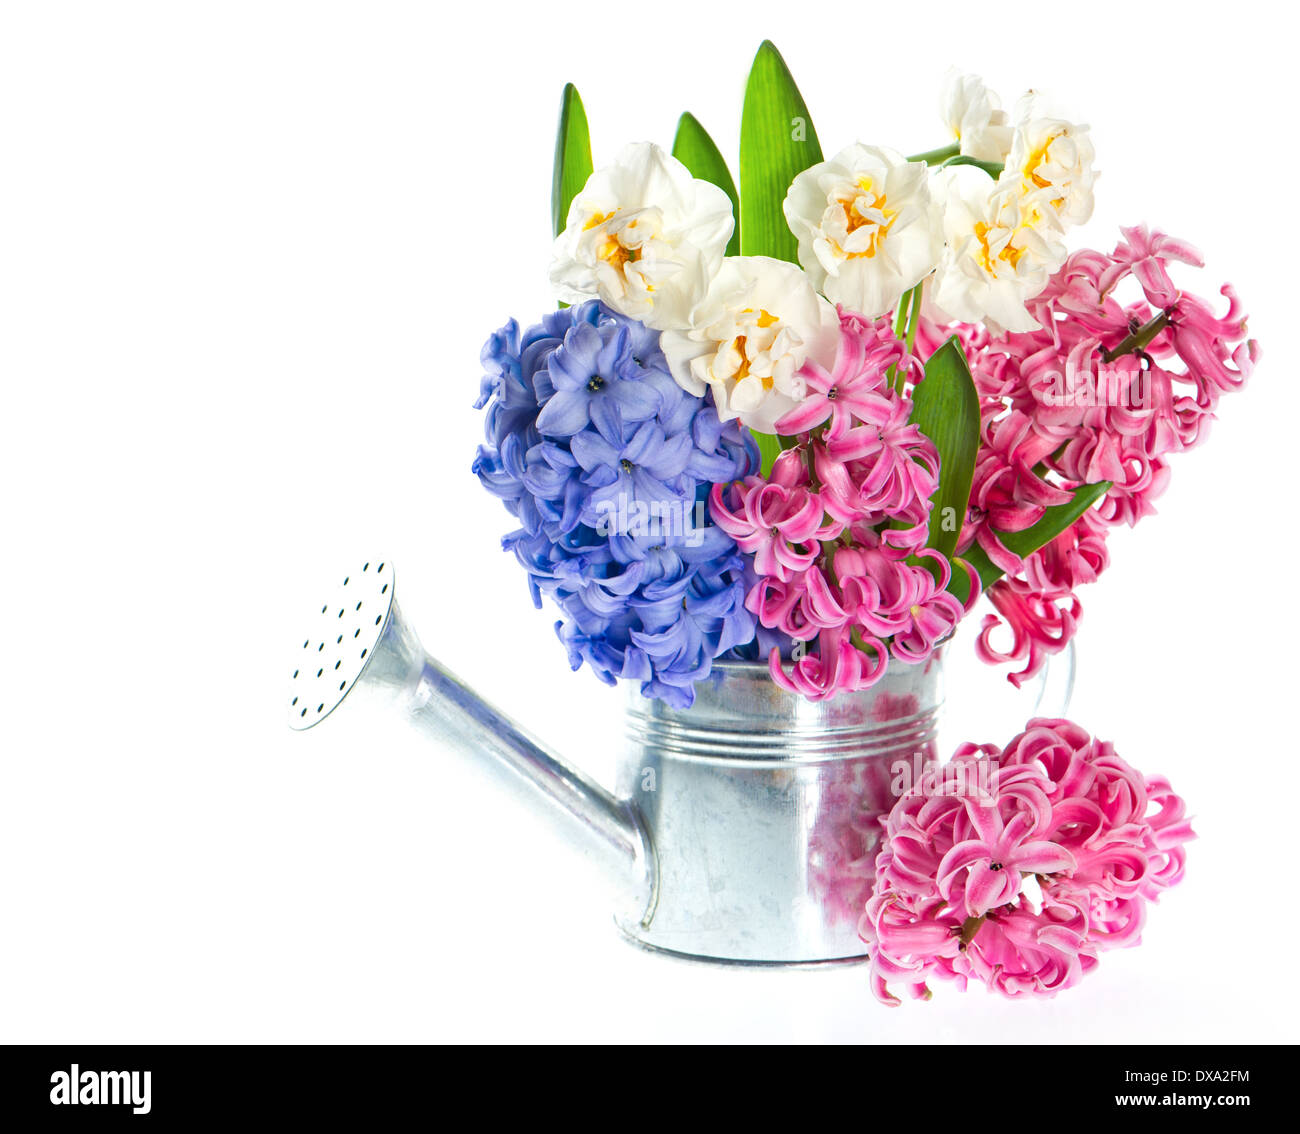 Narcisse et jacinthes. fleurs de printemps dans la région de arrosoir Banque D'Images